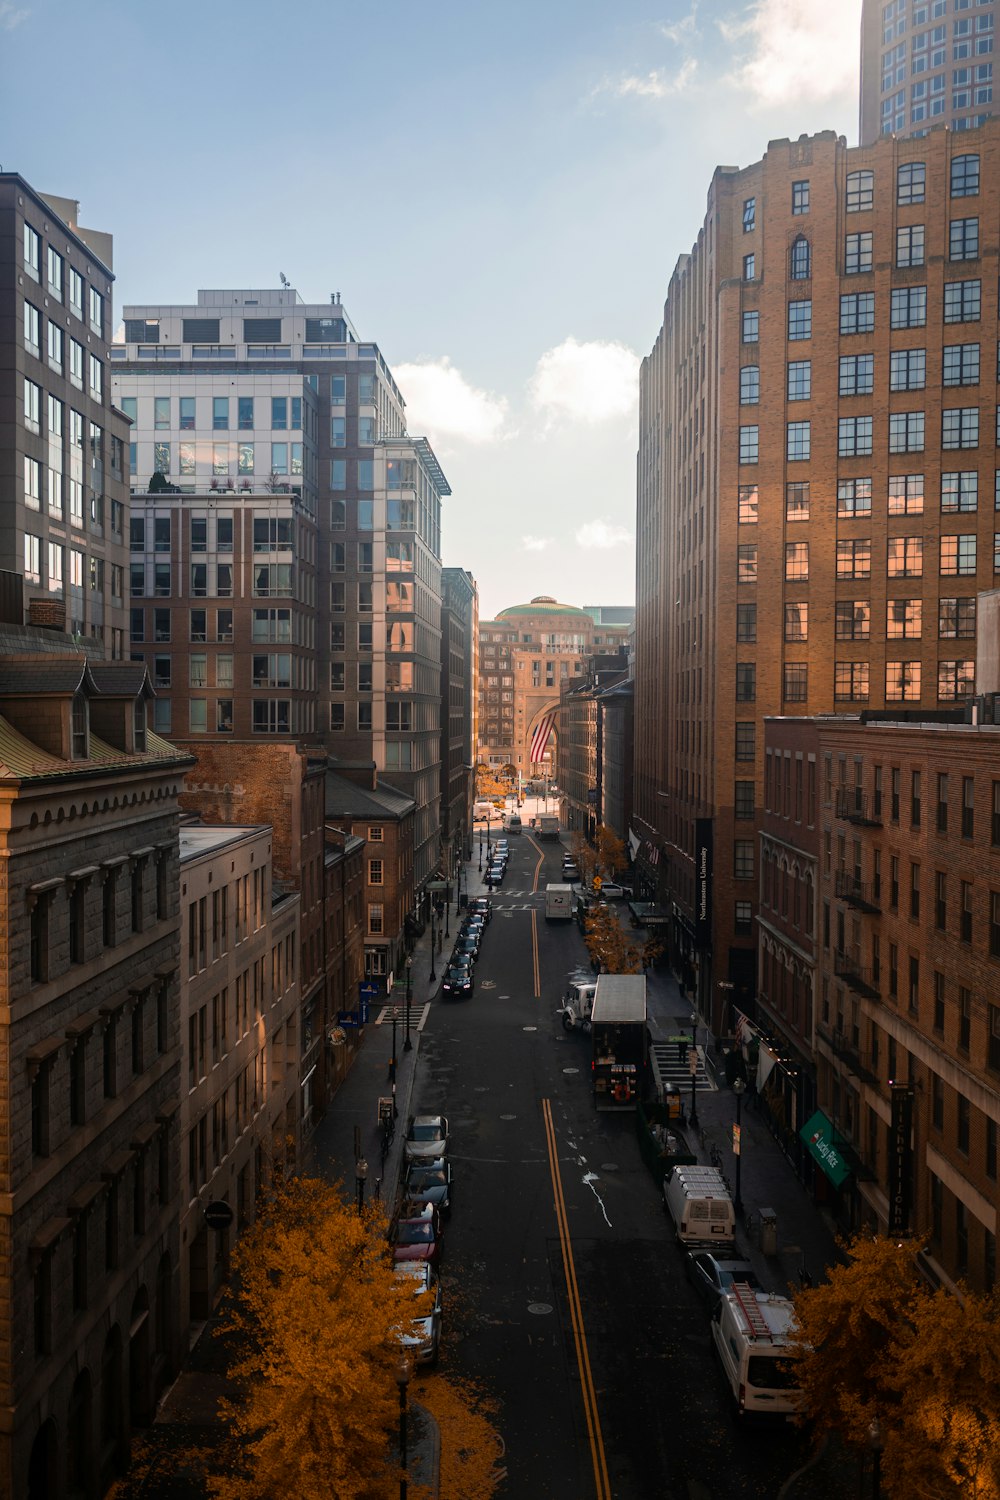 une vue d’une rue de la ville avec de grands immeubles